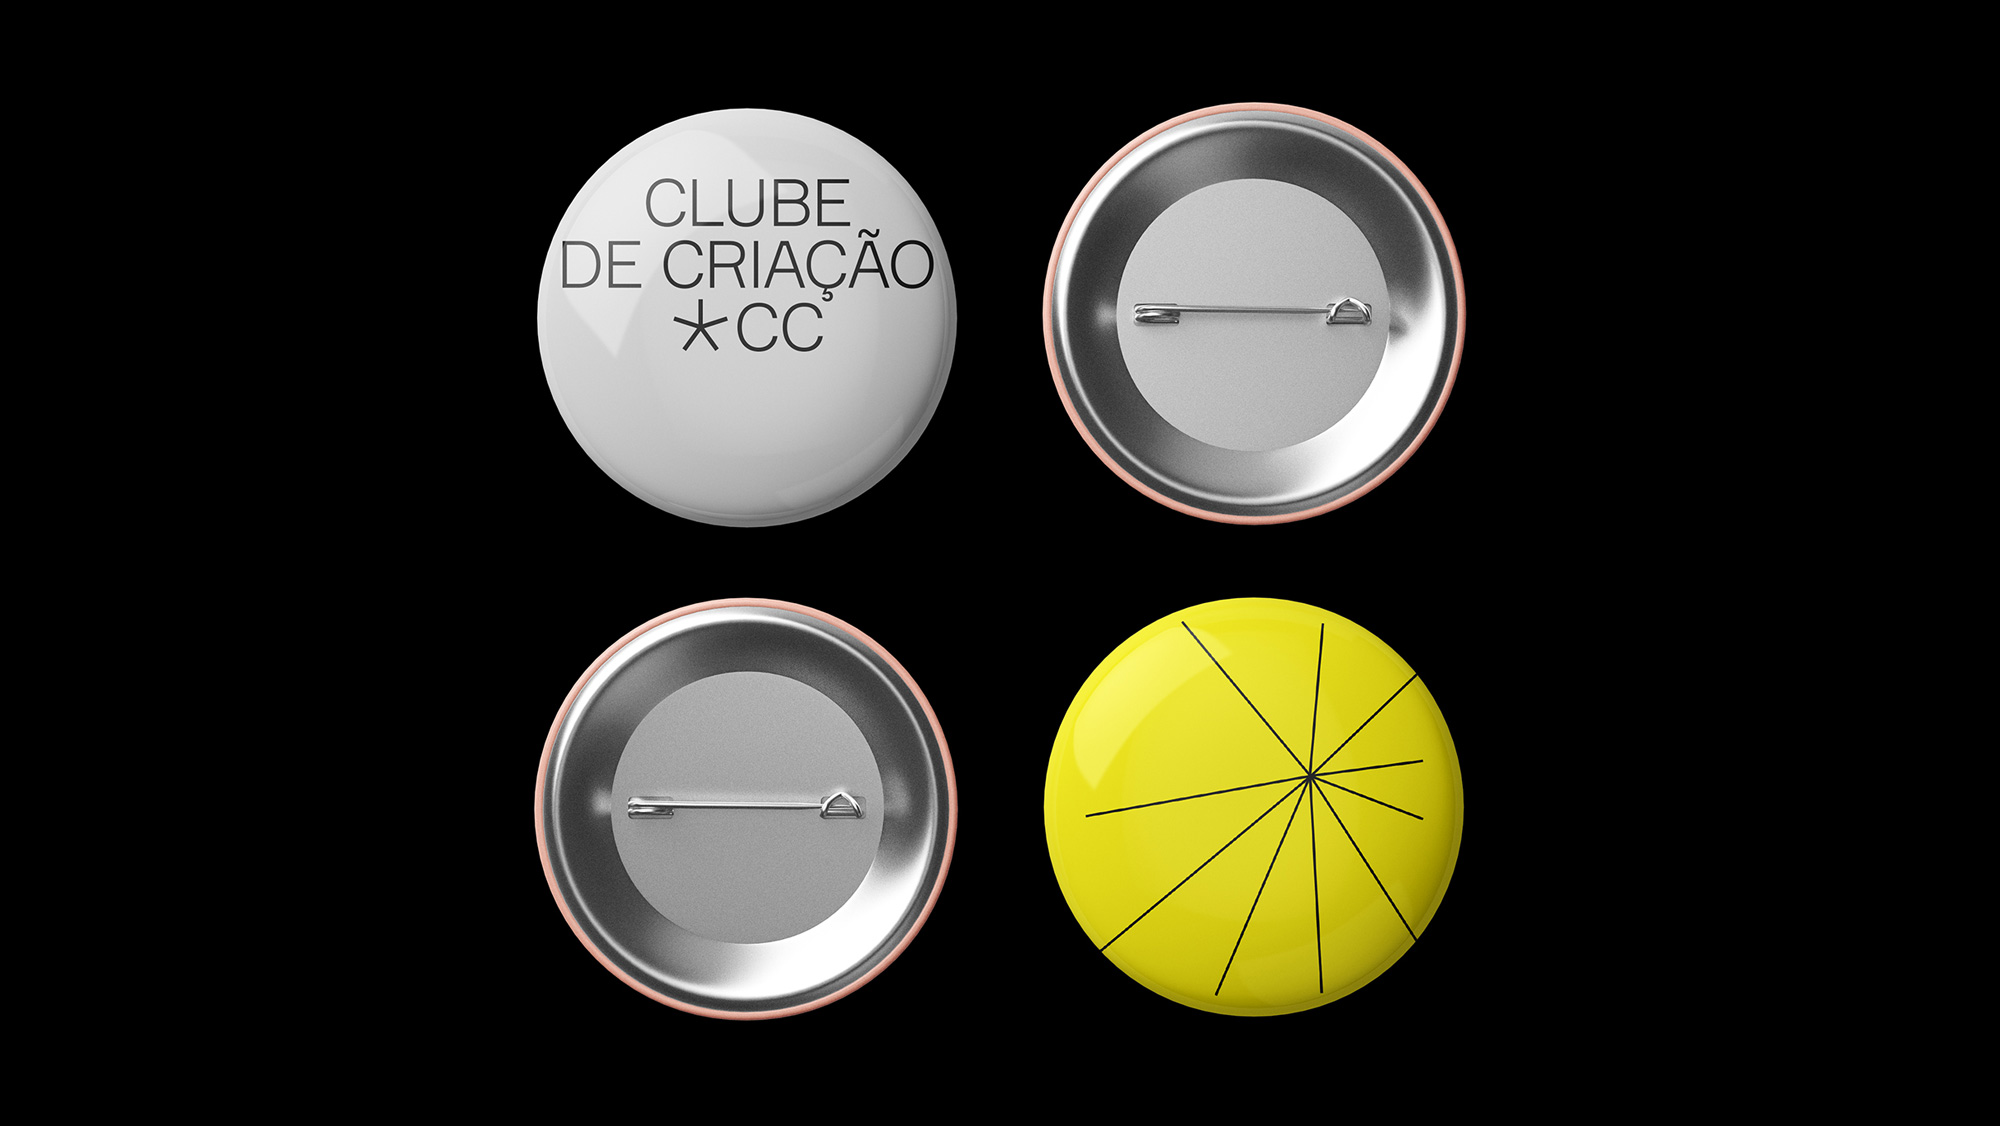 New Logo and Identity for Clube de Criação by Wieden+Kennedy